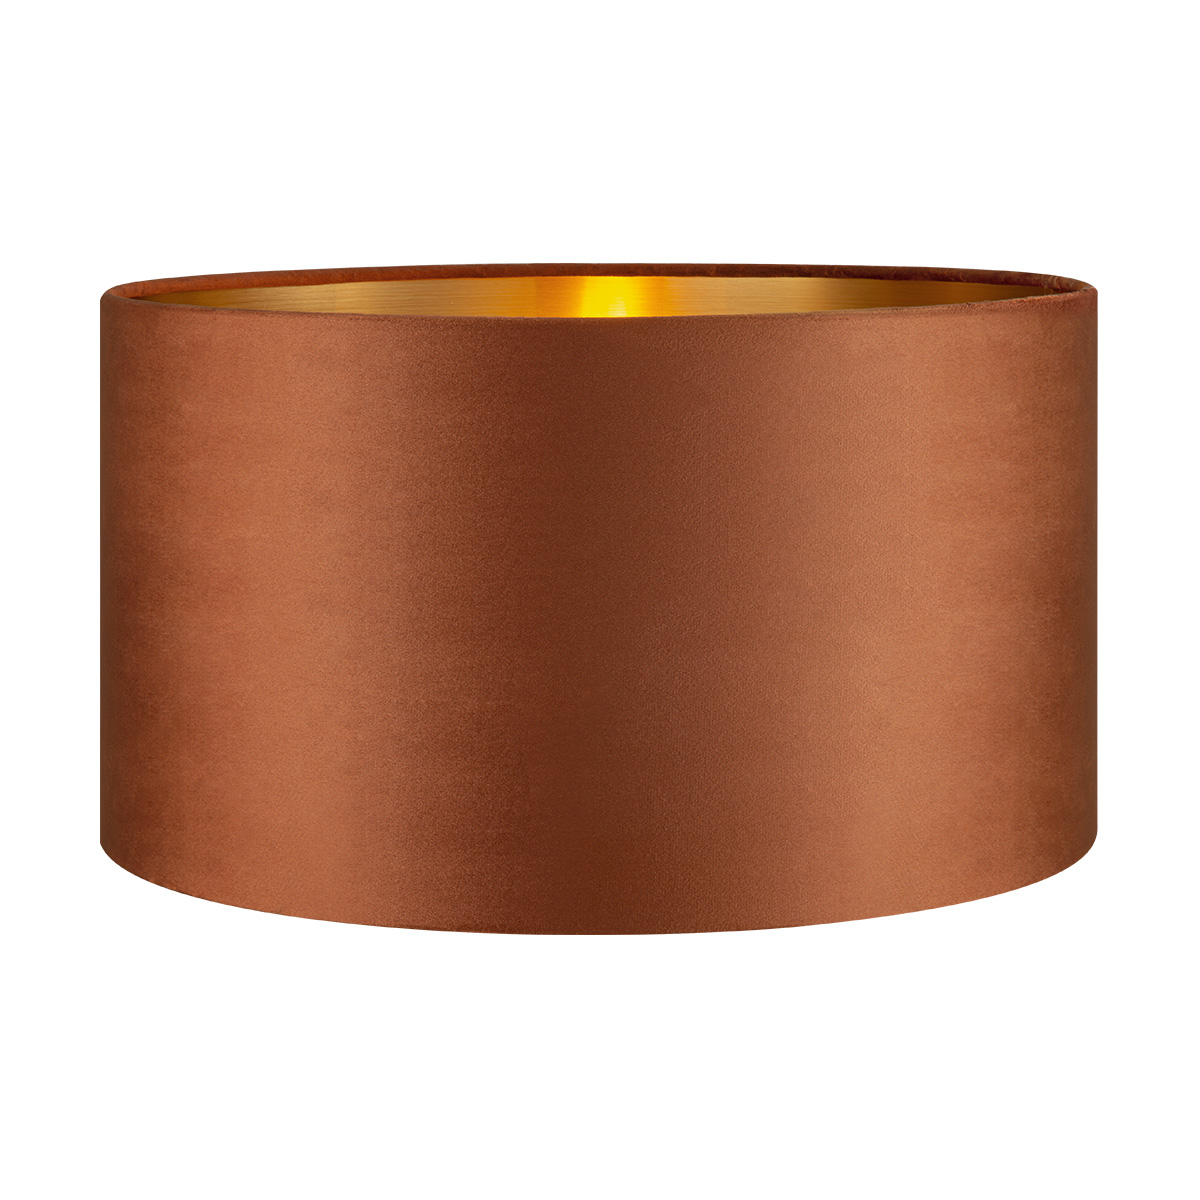 Tangla lighting - TLS7564-45BN - Lampshade - velvet - brown - diameter 45cm - E27